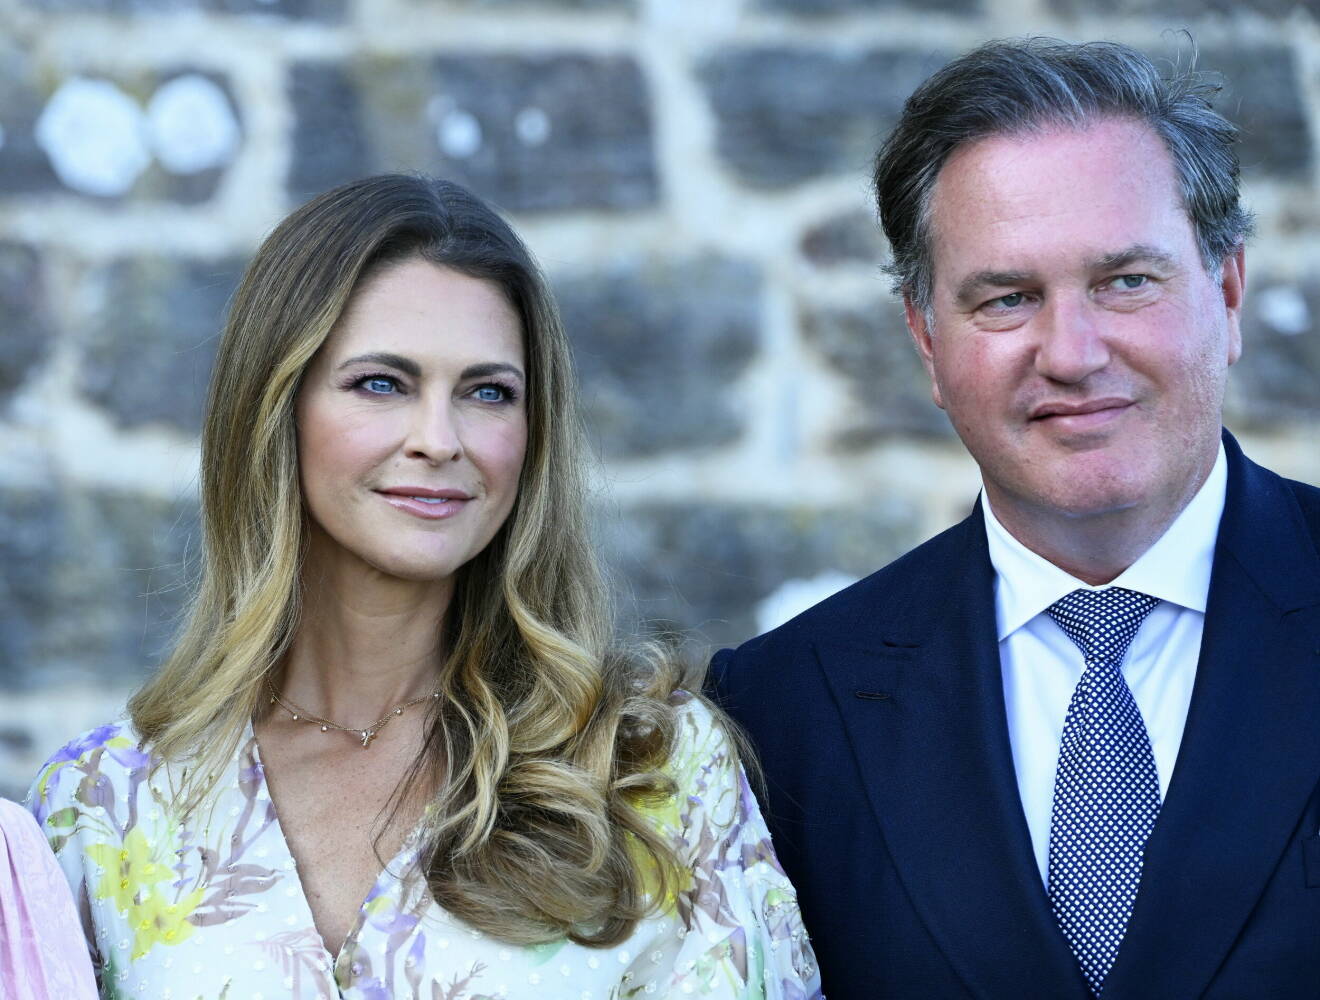 Prinsessan Madeleine och Christopher O'Neill i samband med firandet av kronprinsessan Victorias födelsedag på Sollidens slott på Öland.